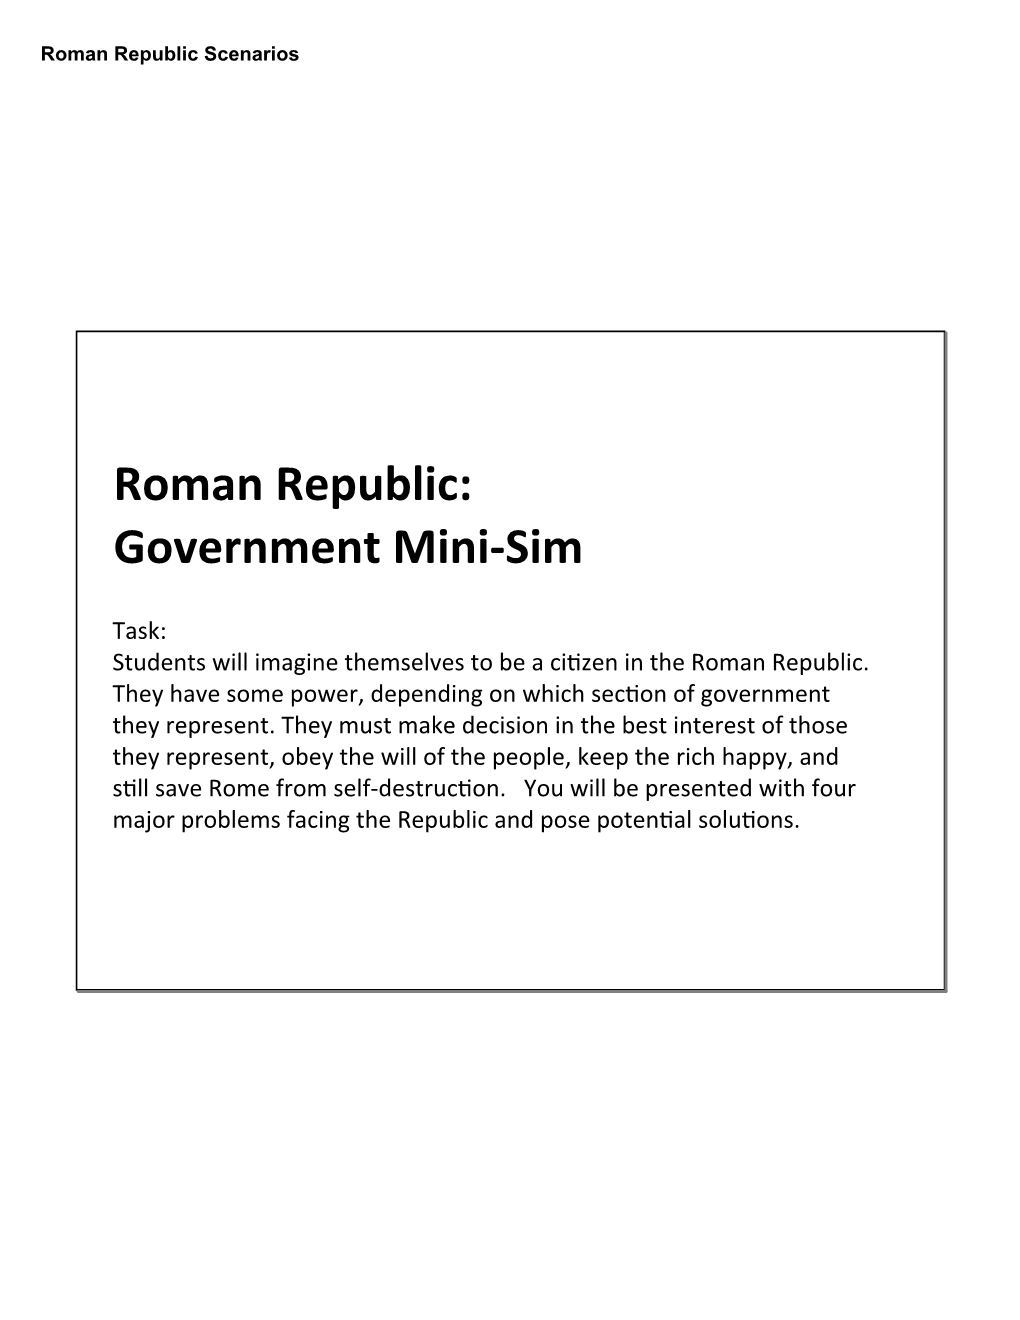 Roman Republic: Government Mini-‐Sim